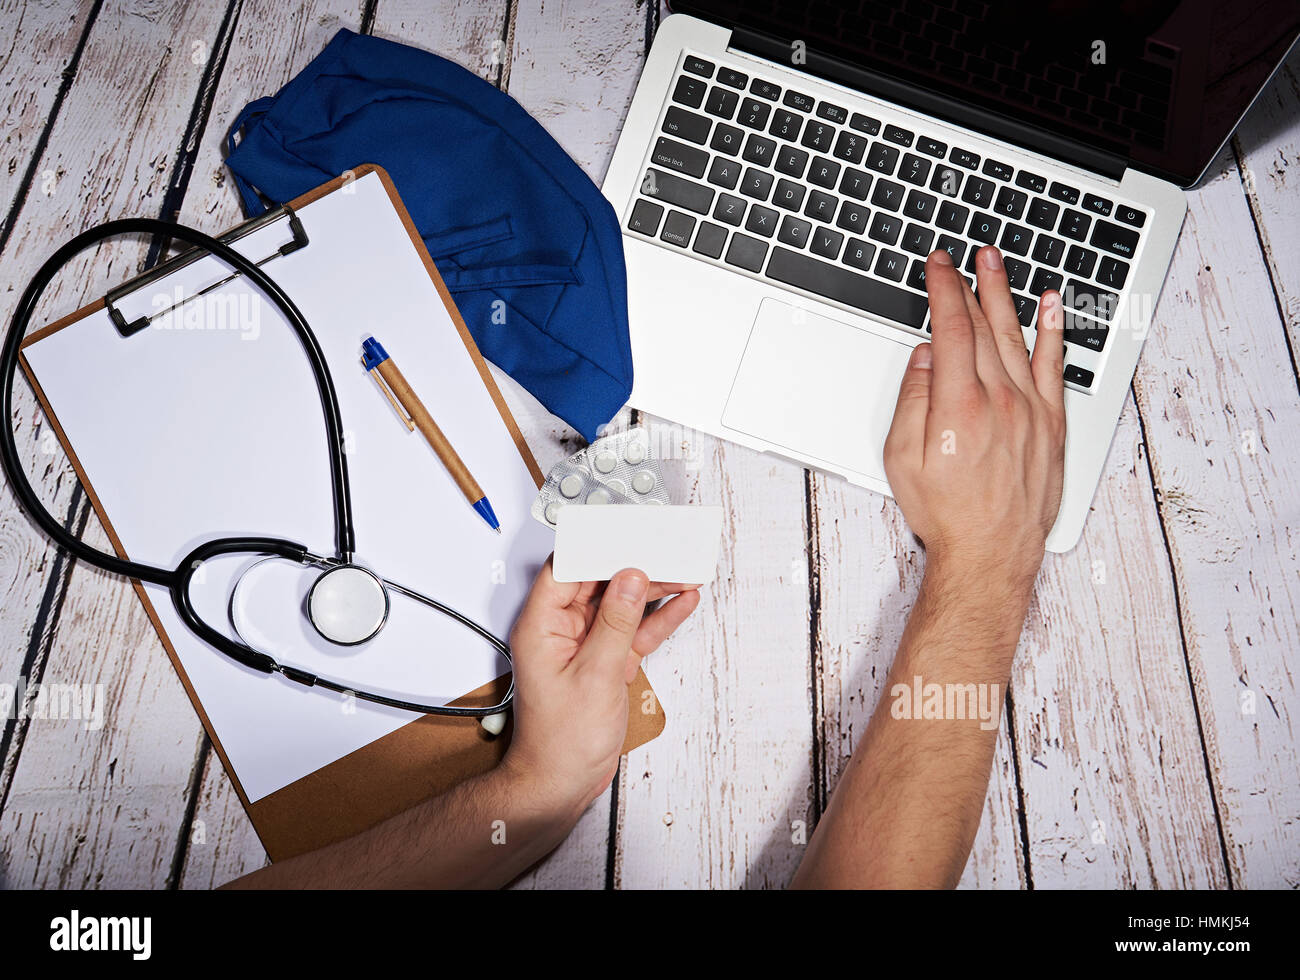 Payer pour un service médical en ligne avec carte de crédit Banque D'Images